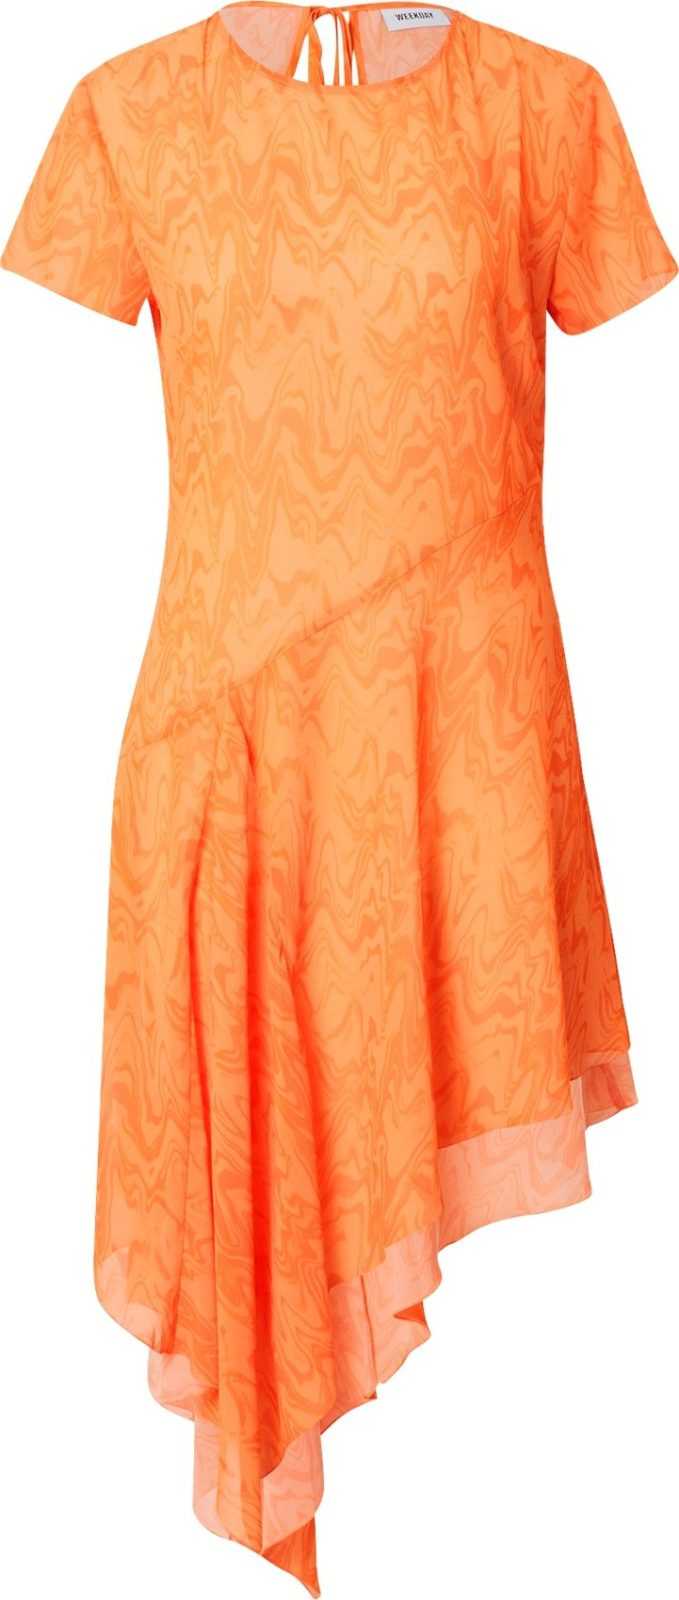 WEEKDAY Šaty oranžová / jasně oranžová